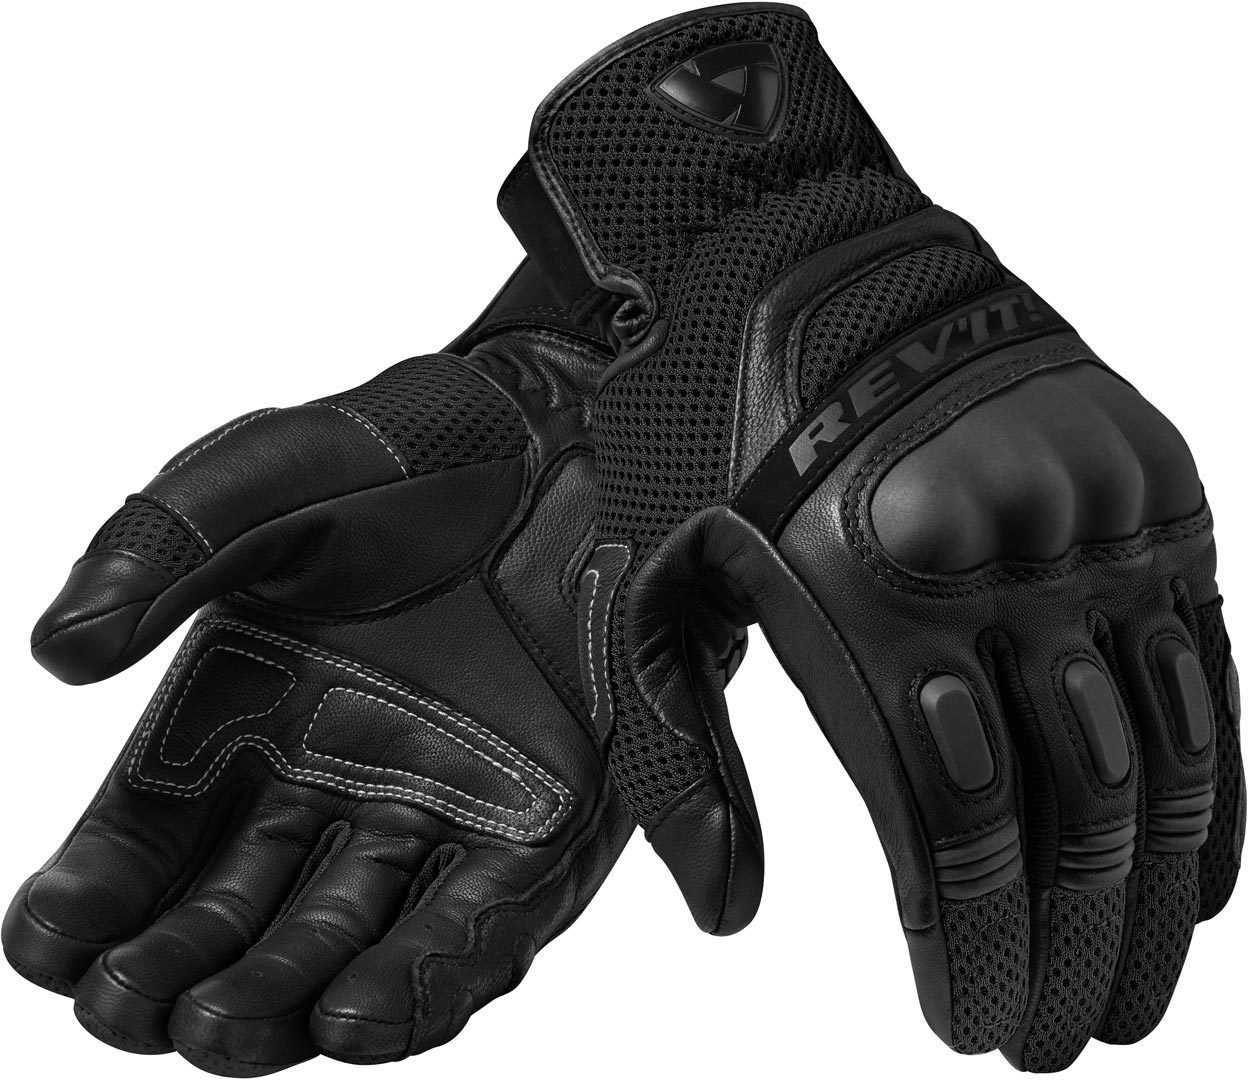 Black/Black Dirt 3 Motorradhandschuhe Handschuhe Motocross Revit